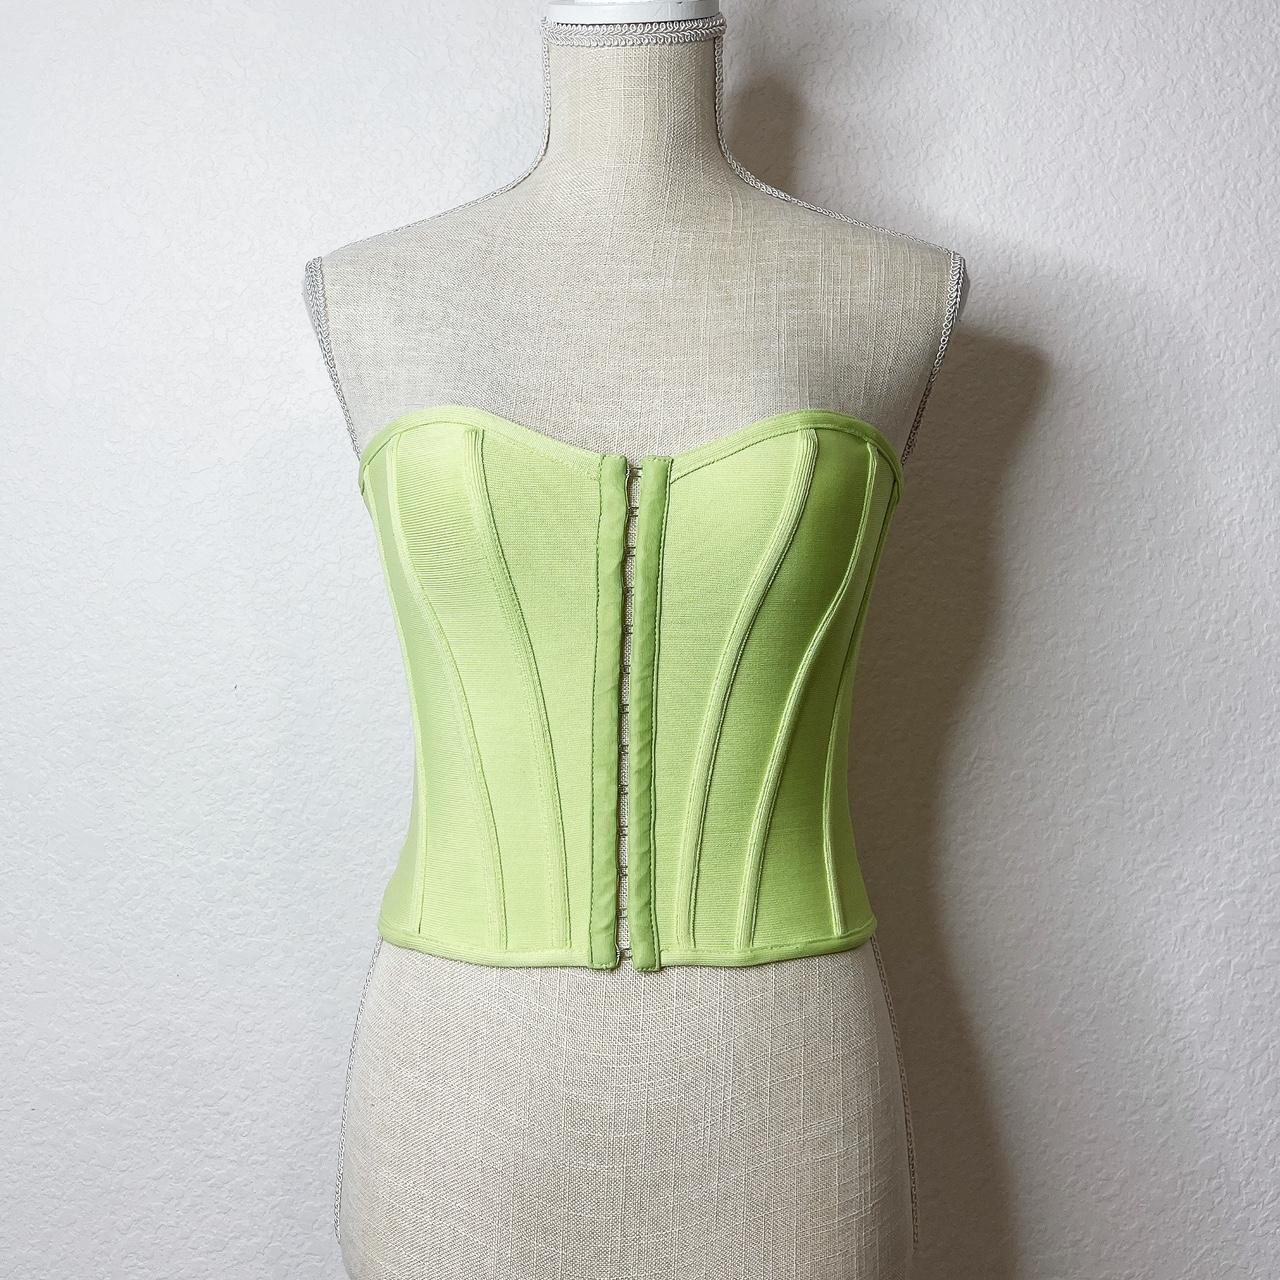 Pretty Little Thing green corset top - Depop